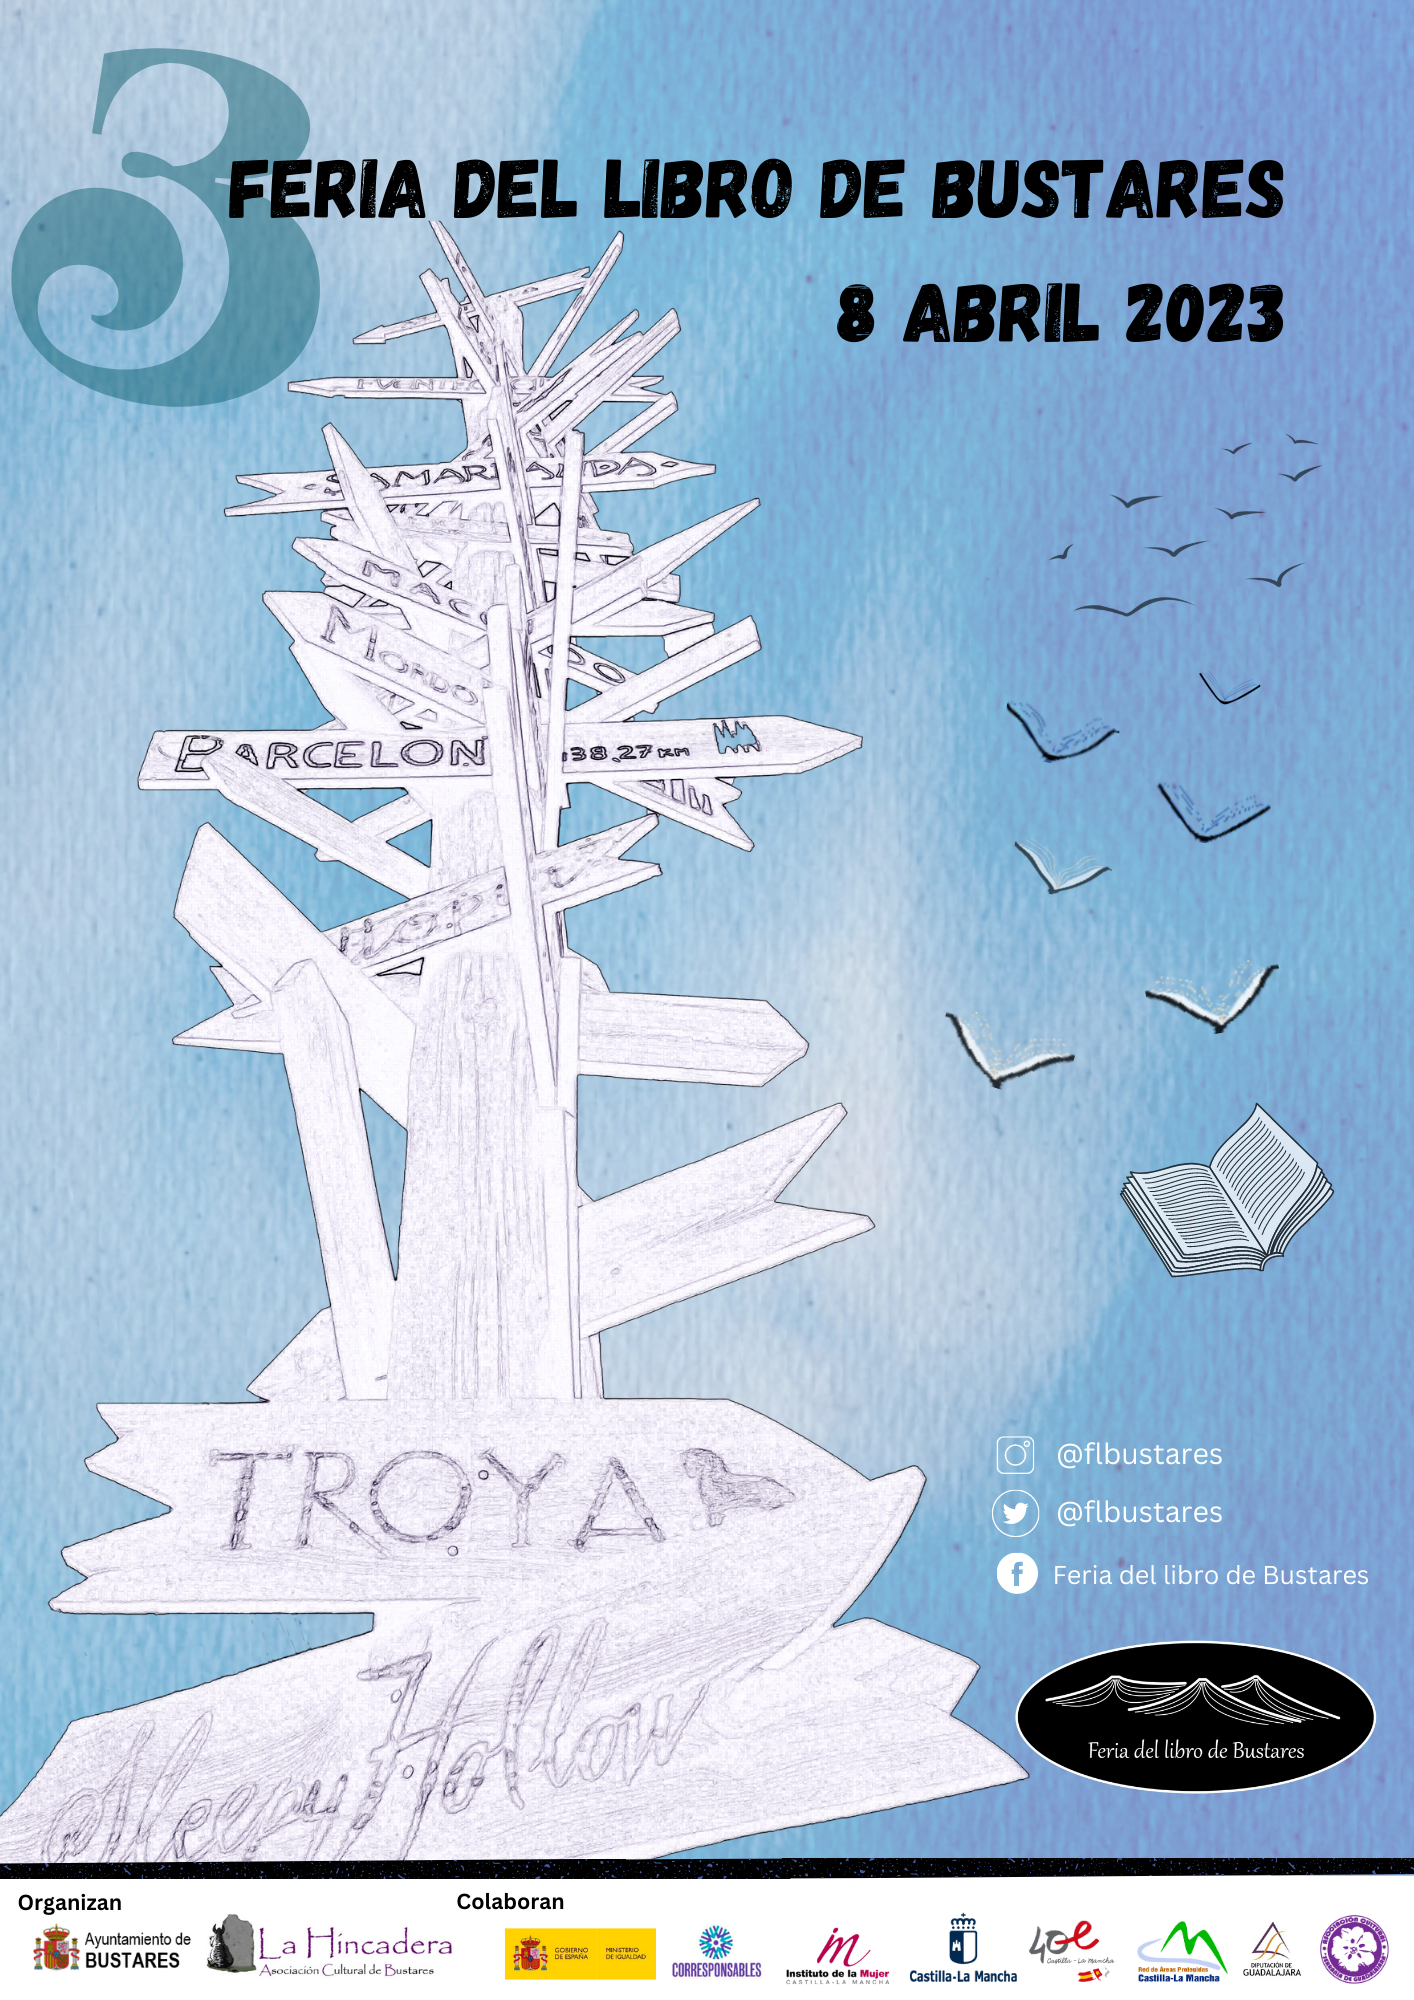 La literatura vuelve a Bustares el sábado 8 de abril en su tercera Feria del Libro 